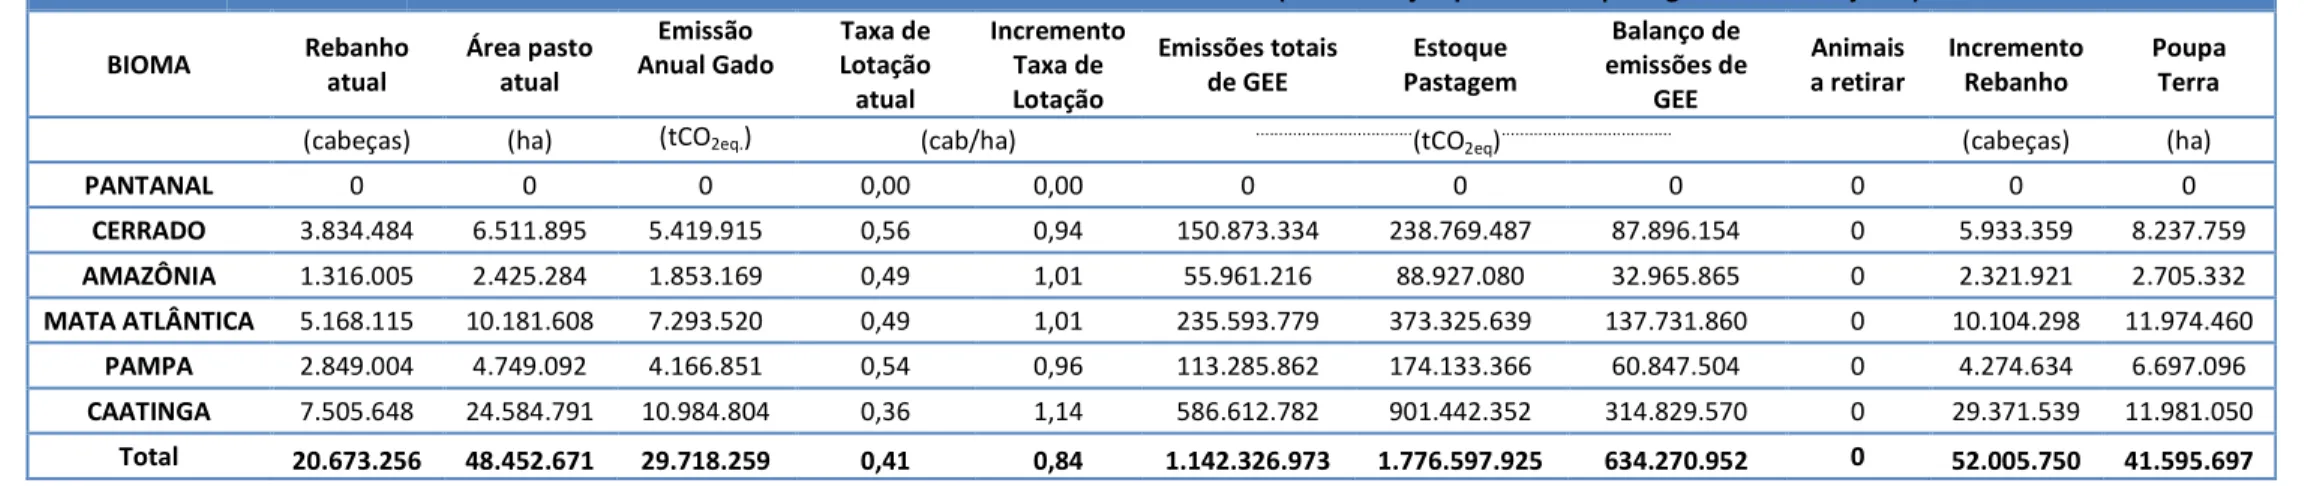 Tabela 10. Impacto de GEE relacionado com a adoção e a não adoção de sistemas de produção de pecuária intensiva nos biomas brasileiros: pastagem bem manejada